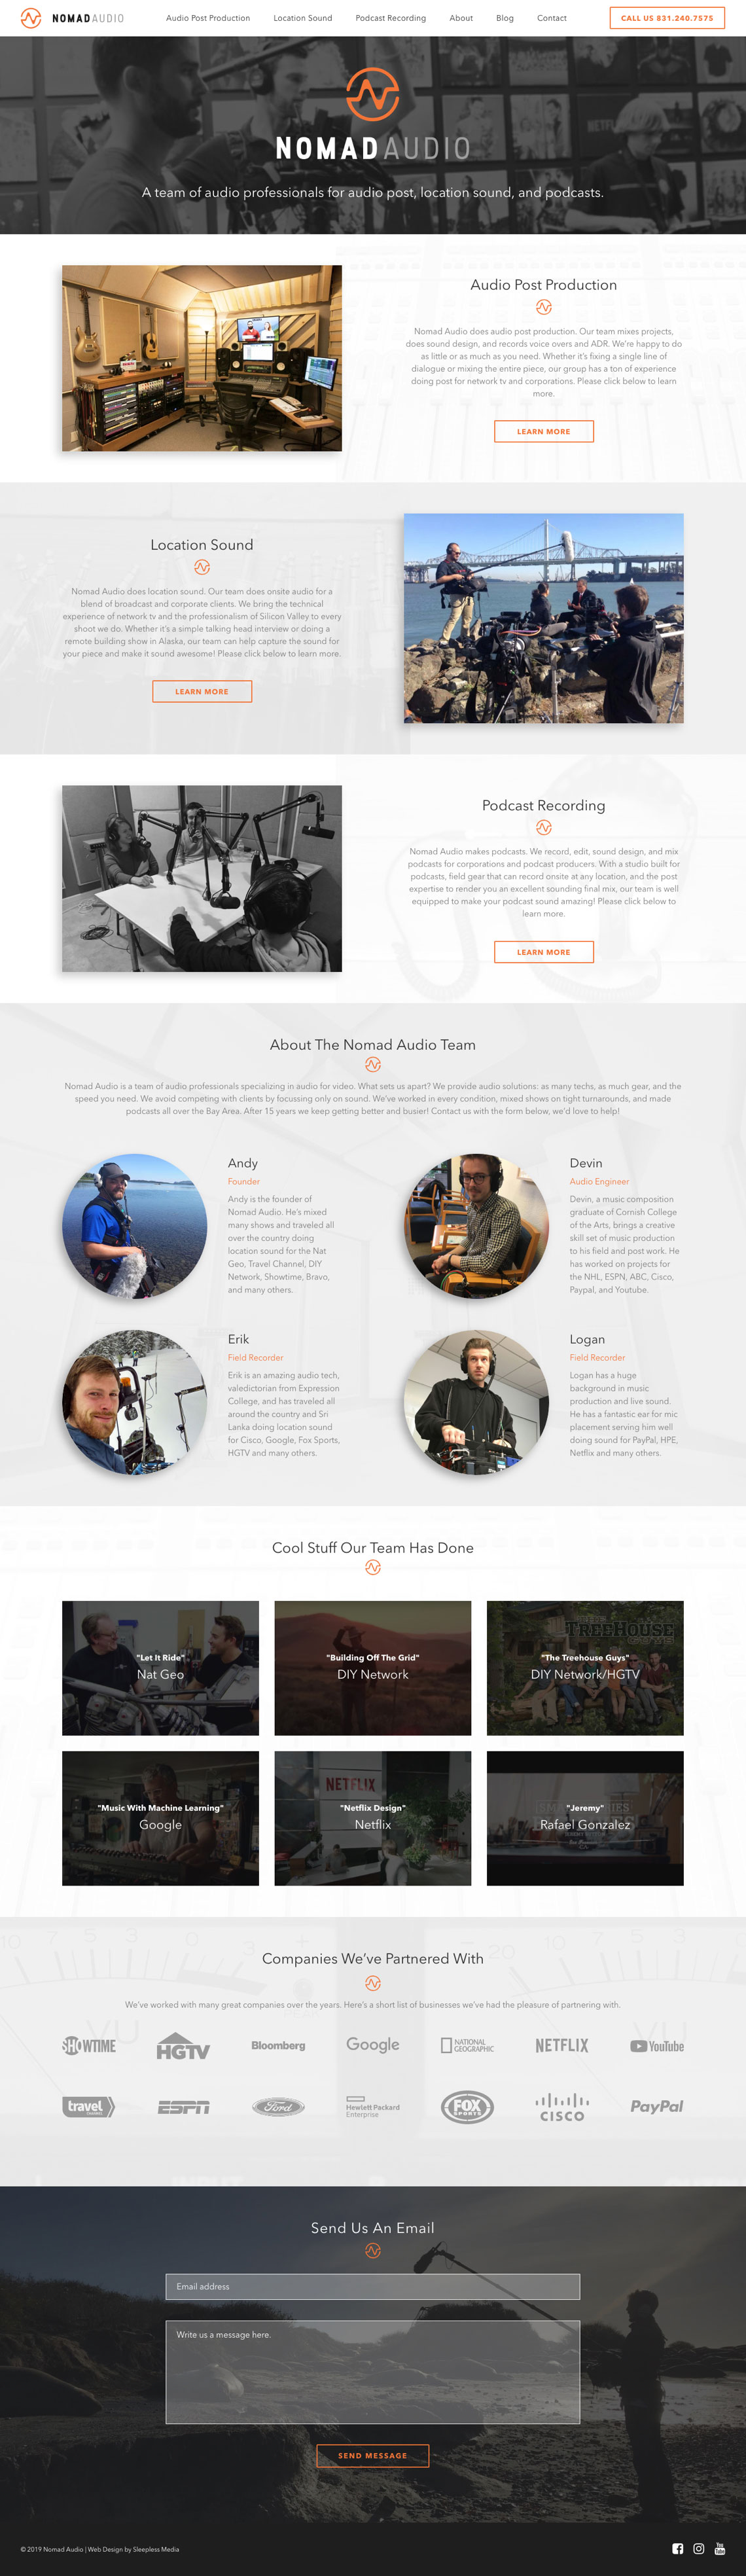 Nomad Audio Homepage